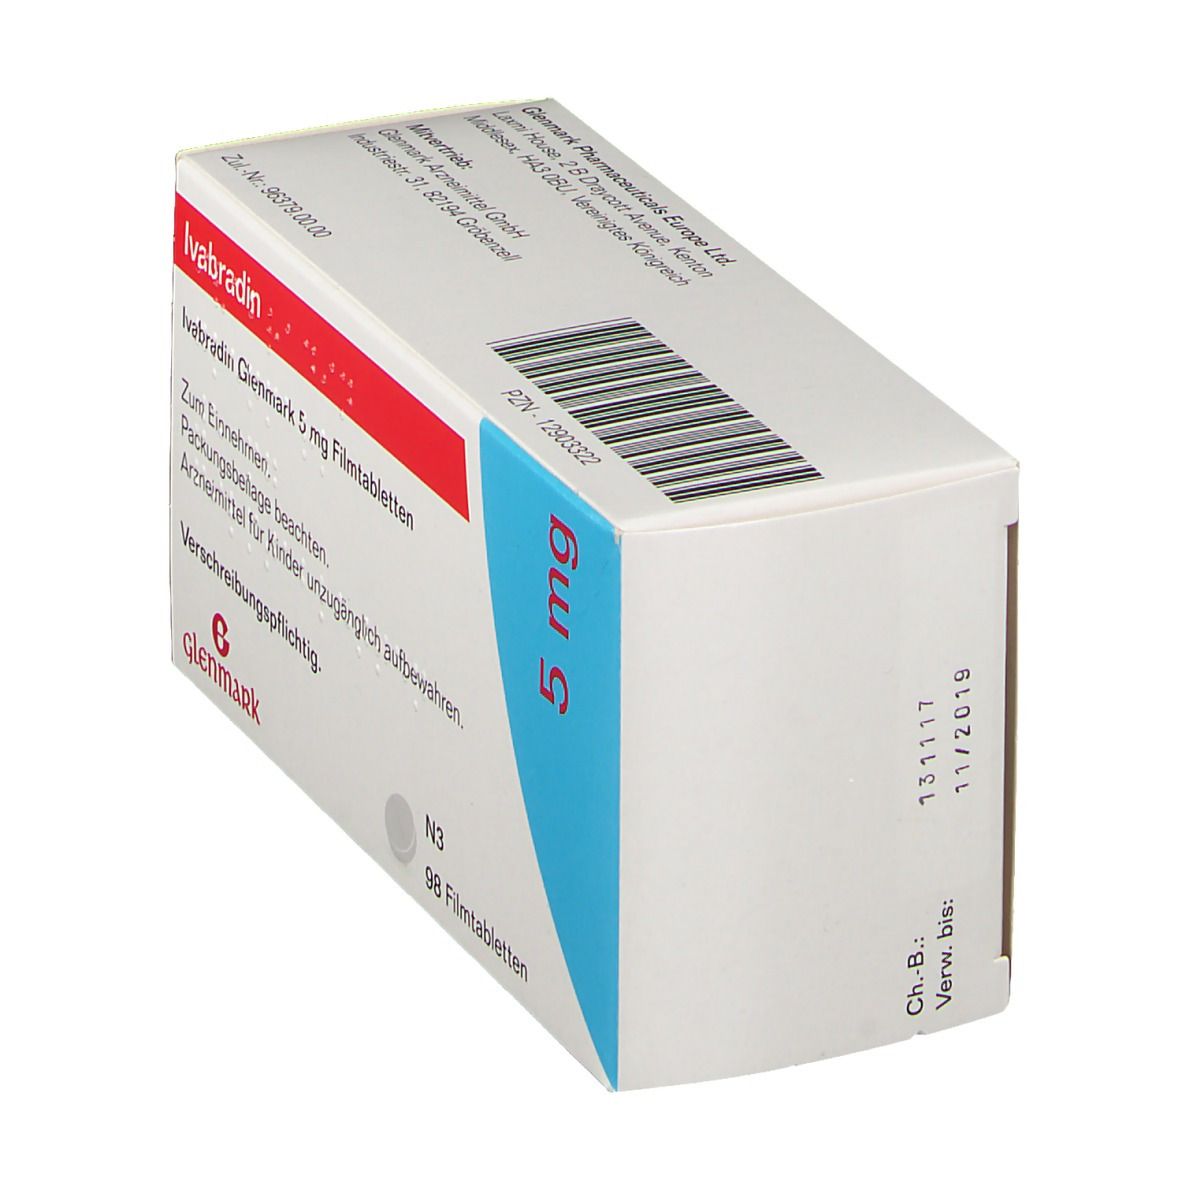 IVABRADIN Glenmark 5 mg Filmtabletten